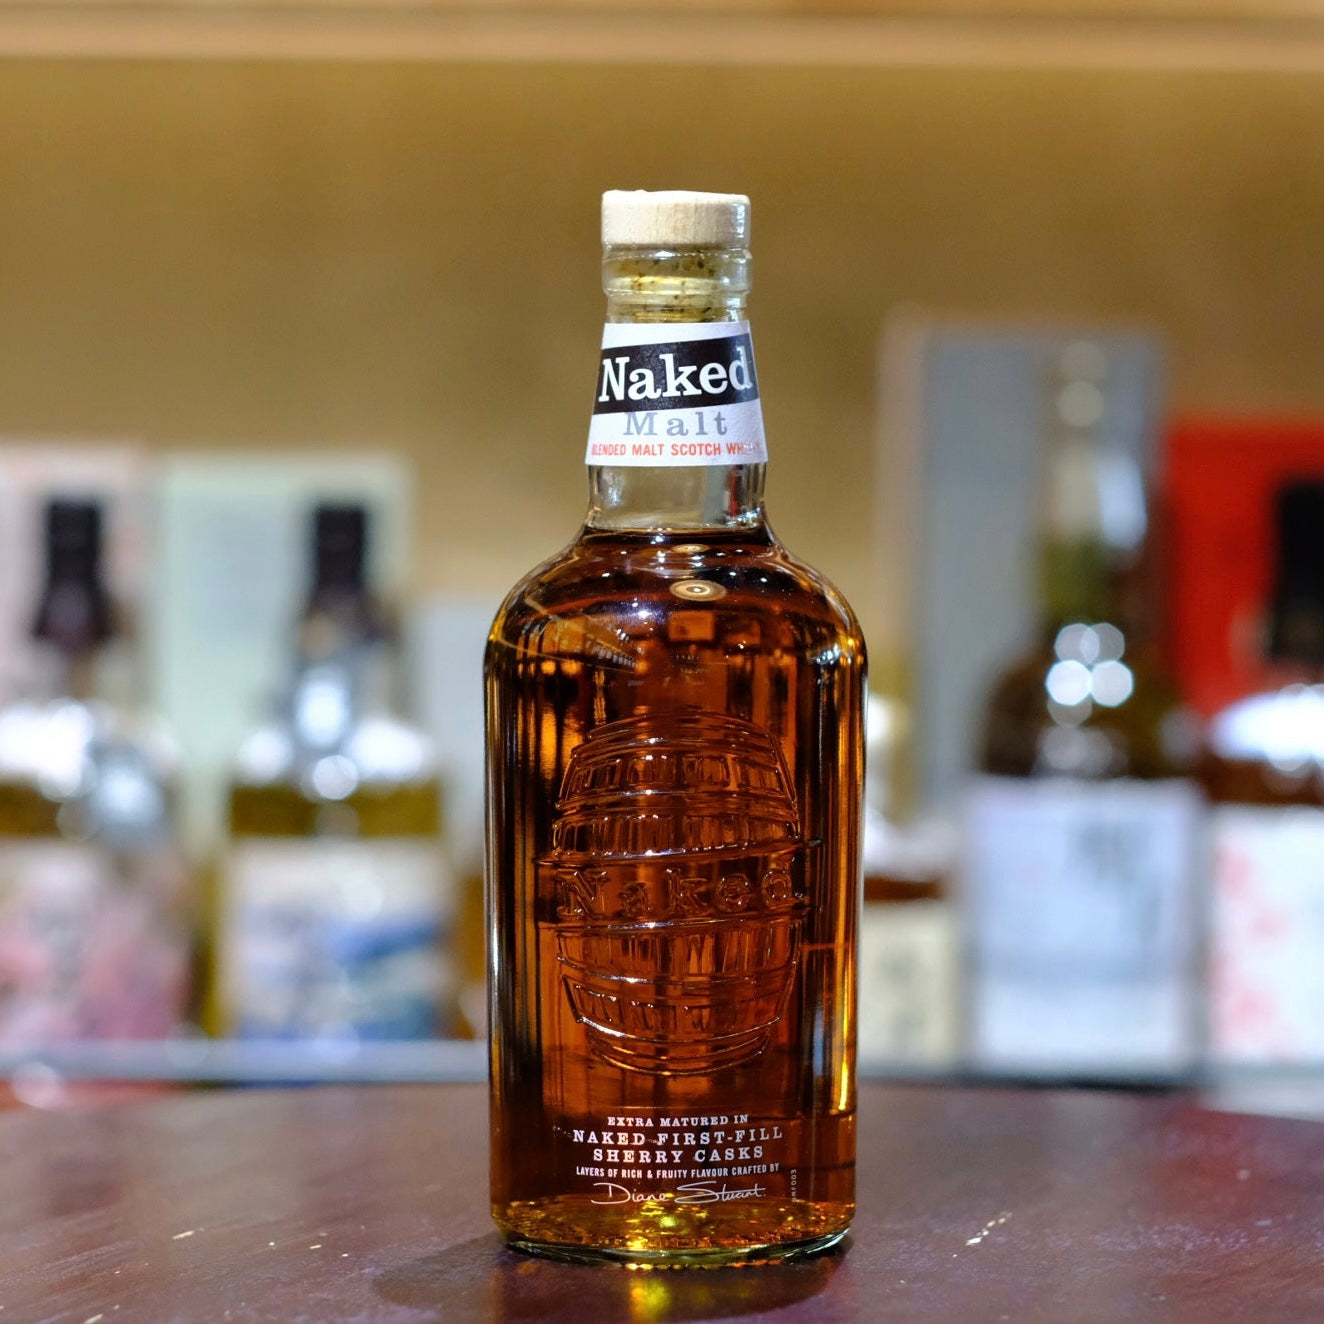 Naked Malt Blended Malt Scotch Whisky